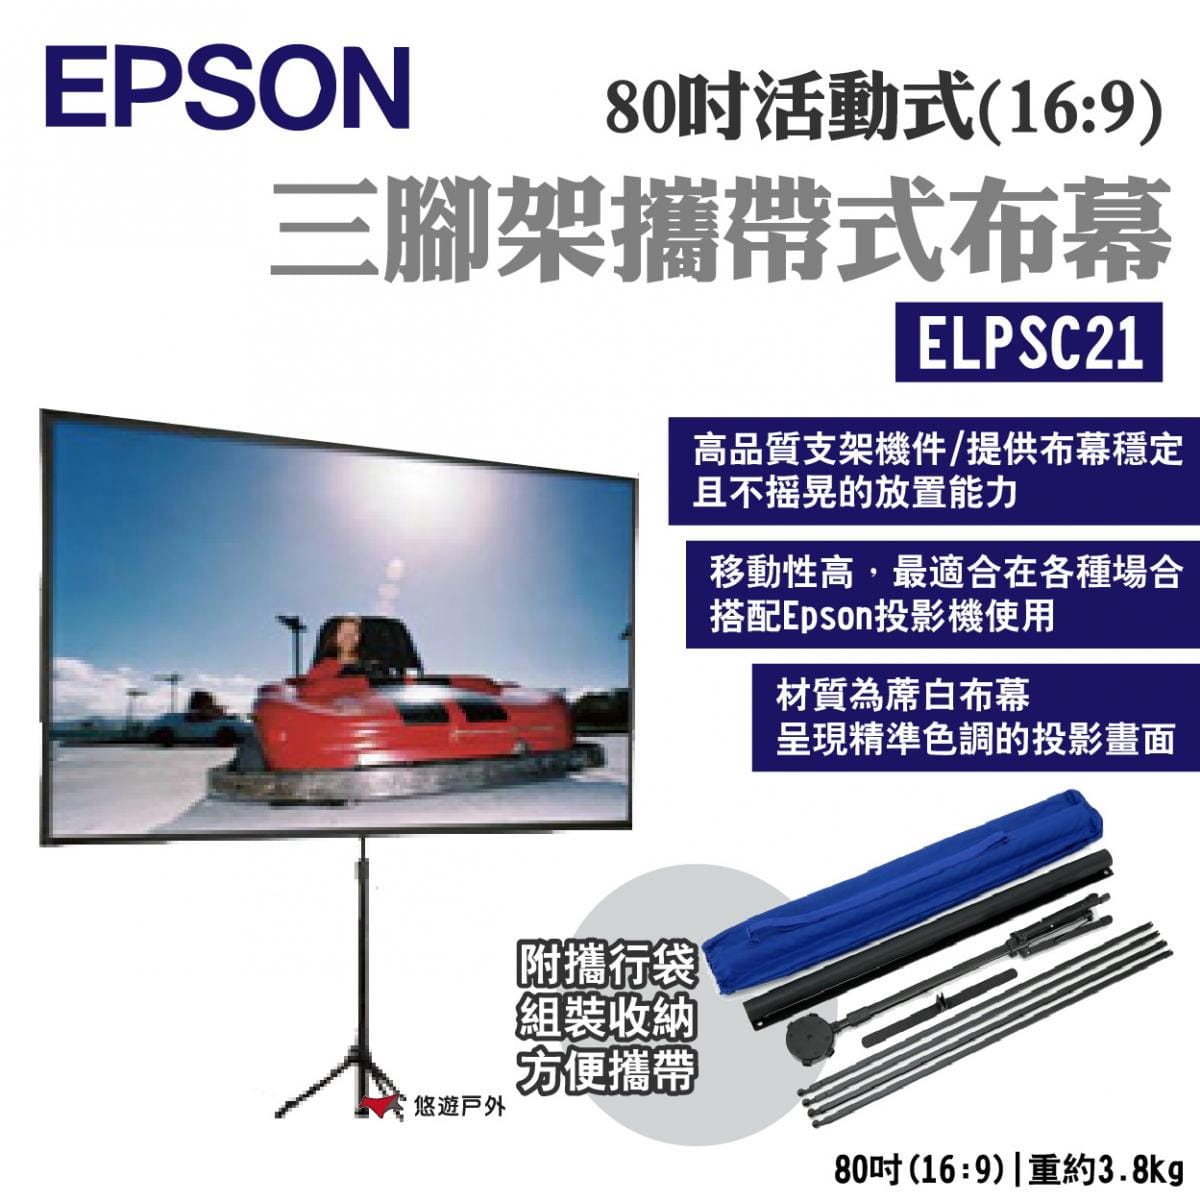 【EPSON】80吋活動式三腳架攜帶式布幕 ELPSC21 悠遊戶外 1